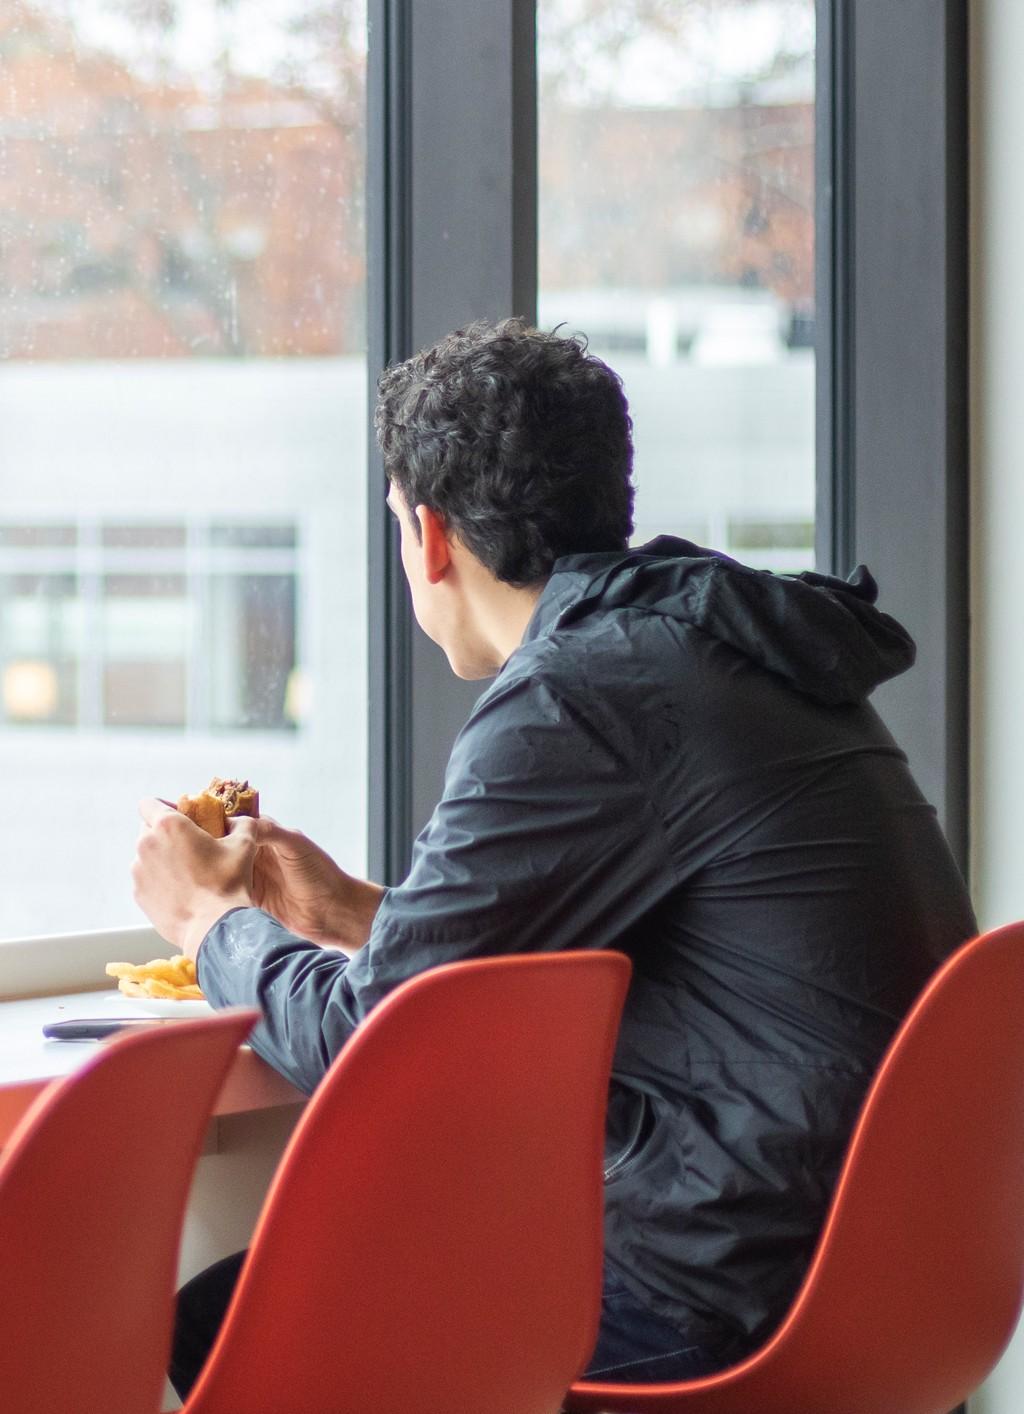 一个学生一边吃汉堡一边望着大玻璃窗